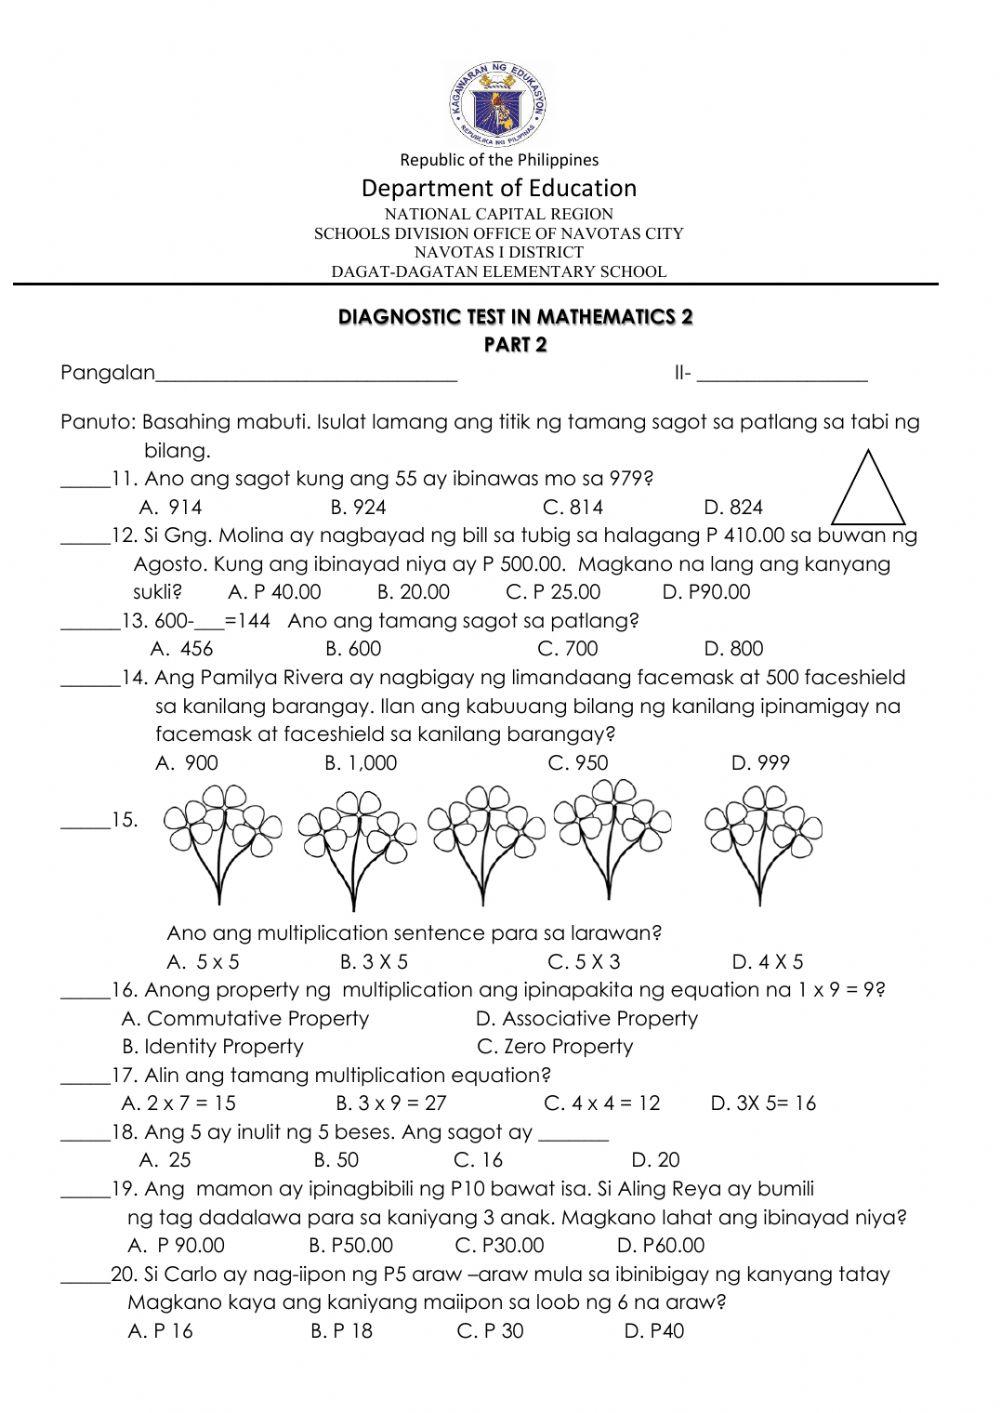 Diagnostic Test in Mathematics PART 2